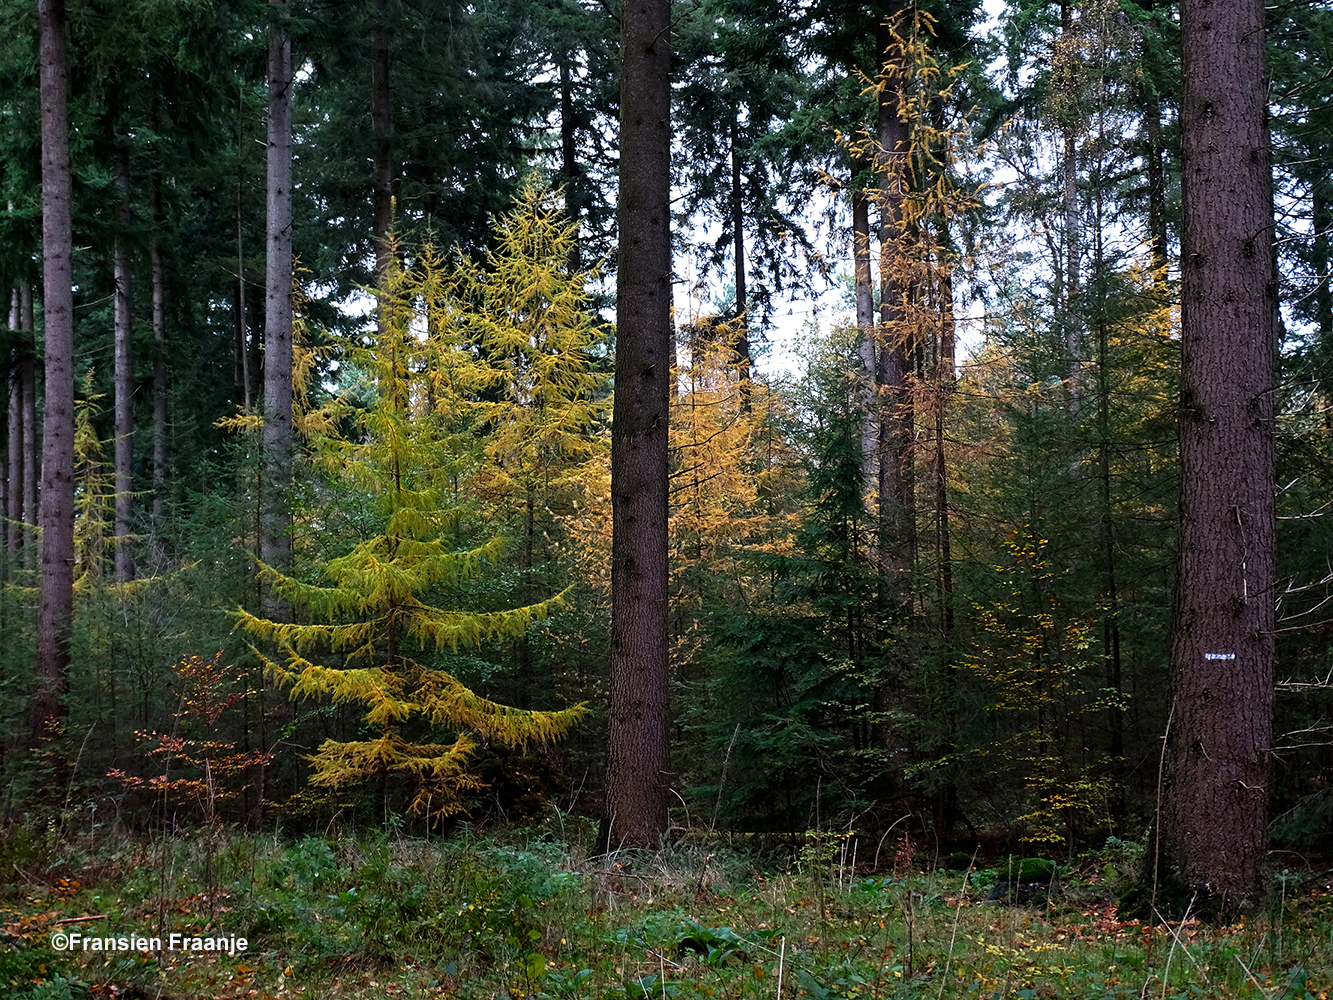 Tussen de enorme Douglassparren bij Vierhouten kleurt de larix nog mooier - Foto: ©Fransien Fraanje